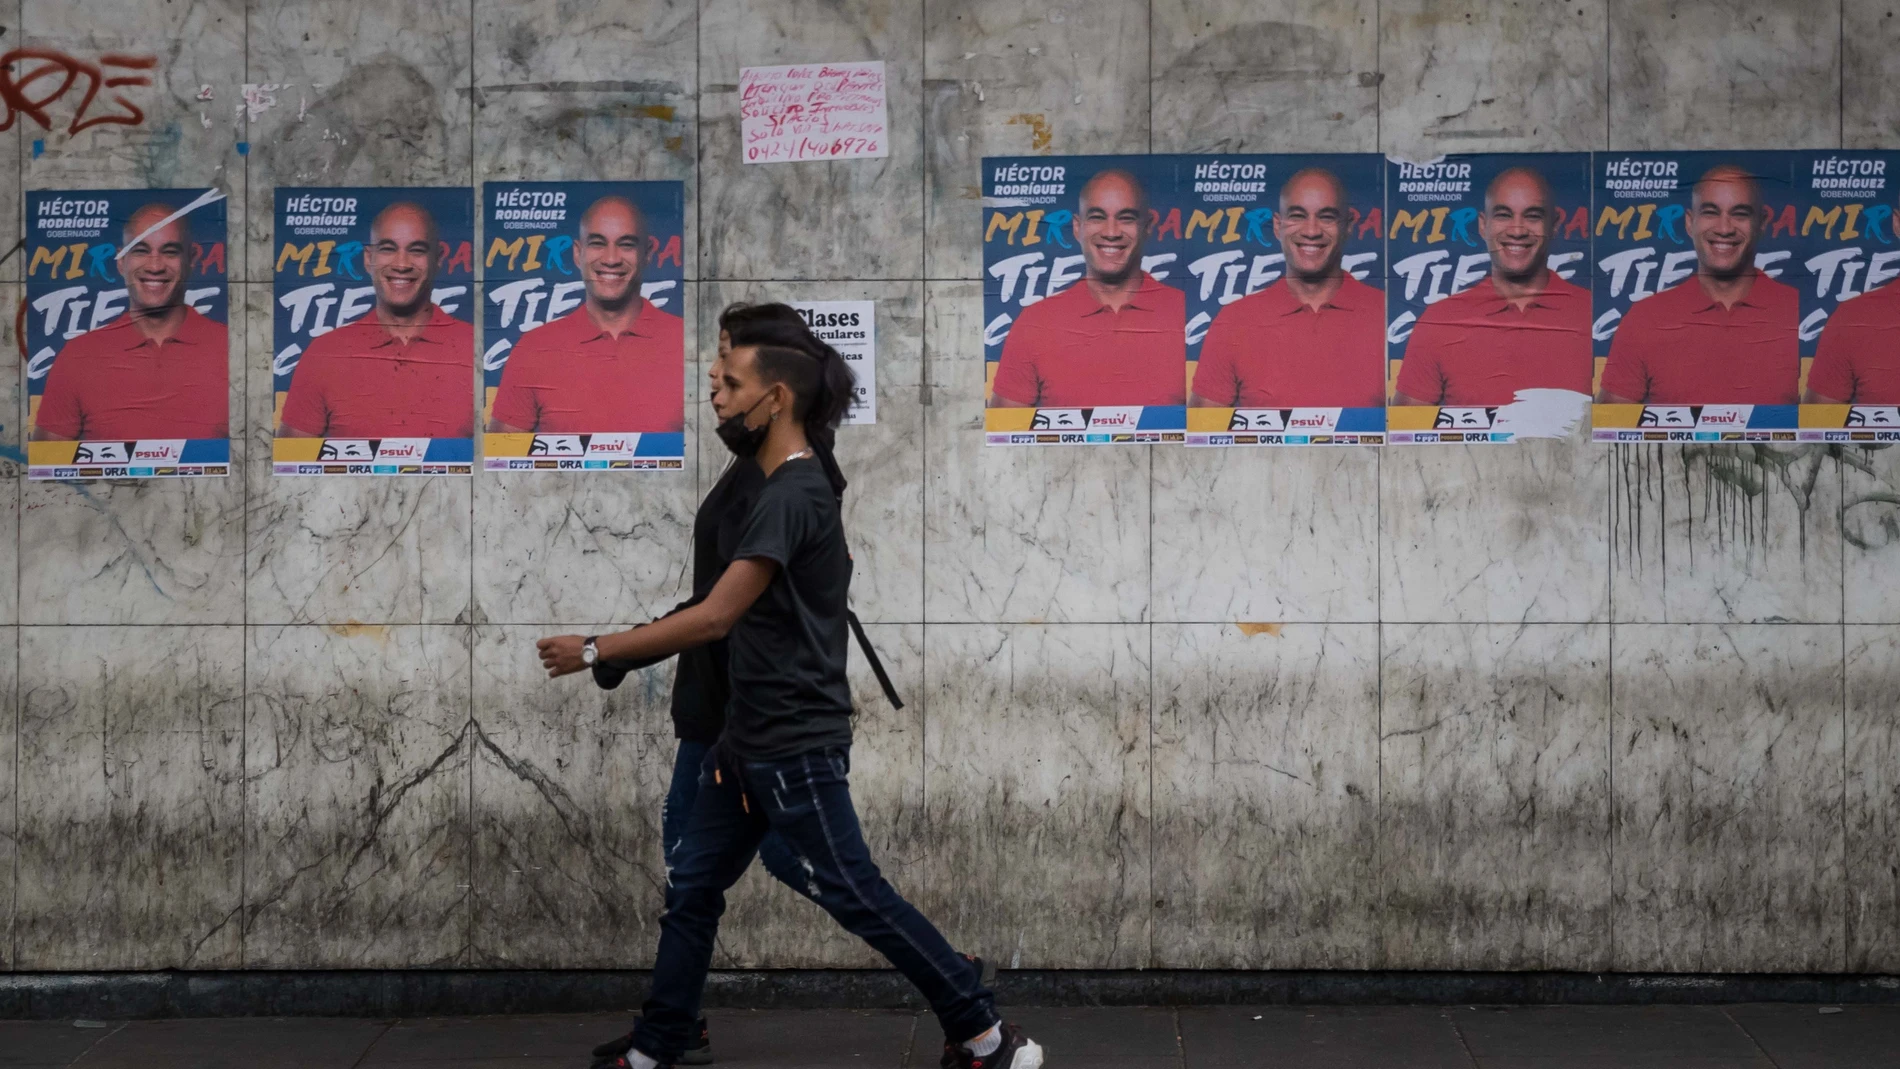 Fotografía que muestra publicidad política a favor de candidatos adeptos al gobierno de Nicolás Maduro el 17 de noviembre del 2021, en Caracas (Venezuela)